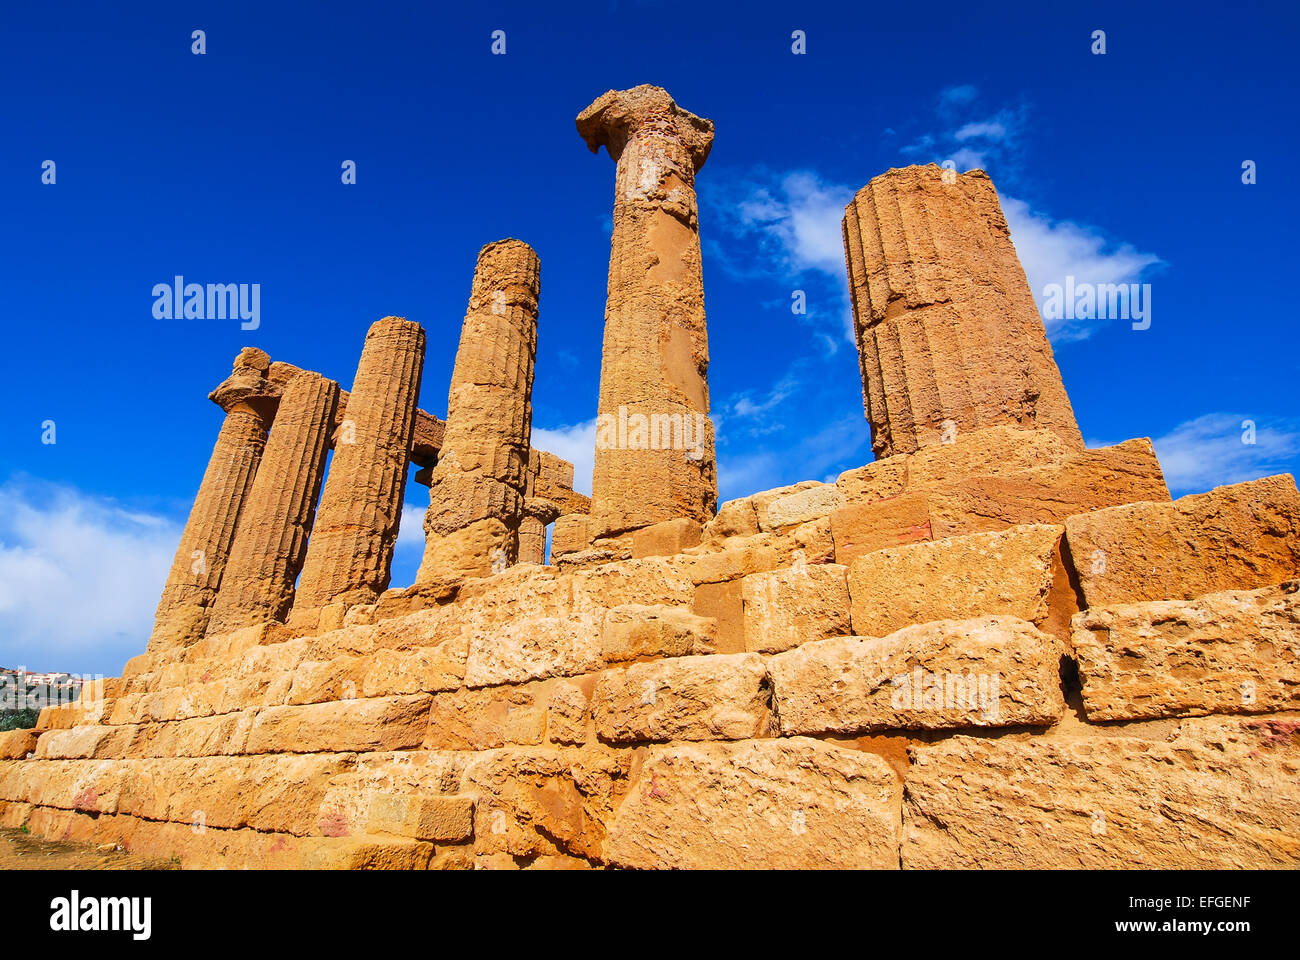 Sizilien. Tempel des Herkules, Griechisch dorischen Stil Tempel in der antiken Stadt Akragas, befindet sich im Valle dei Templi in Agrigent Stockfoto